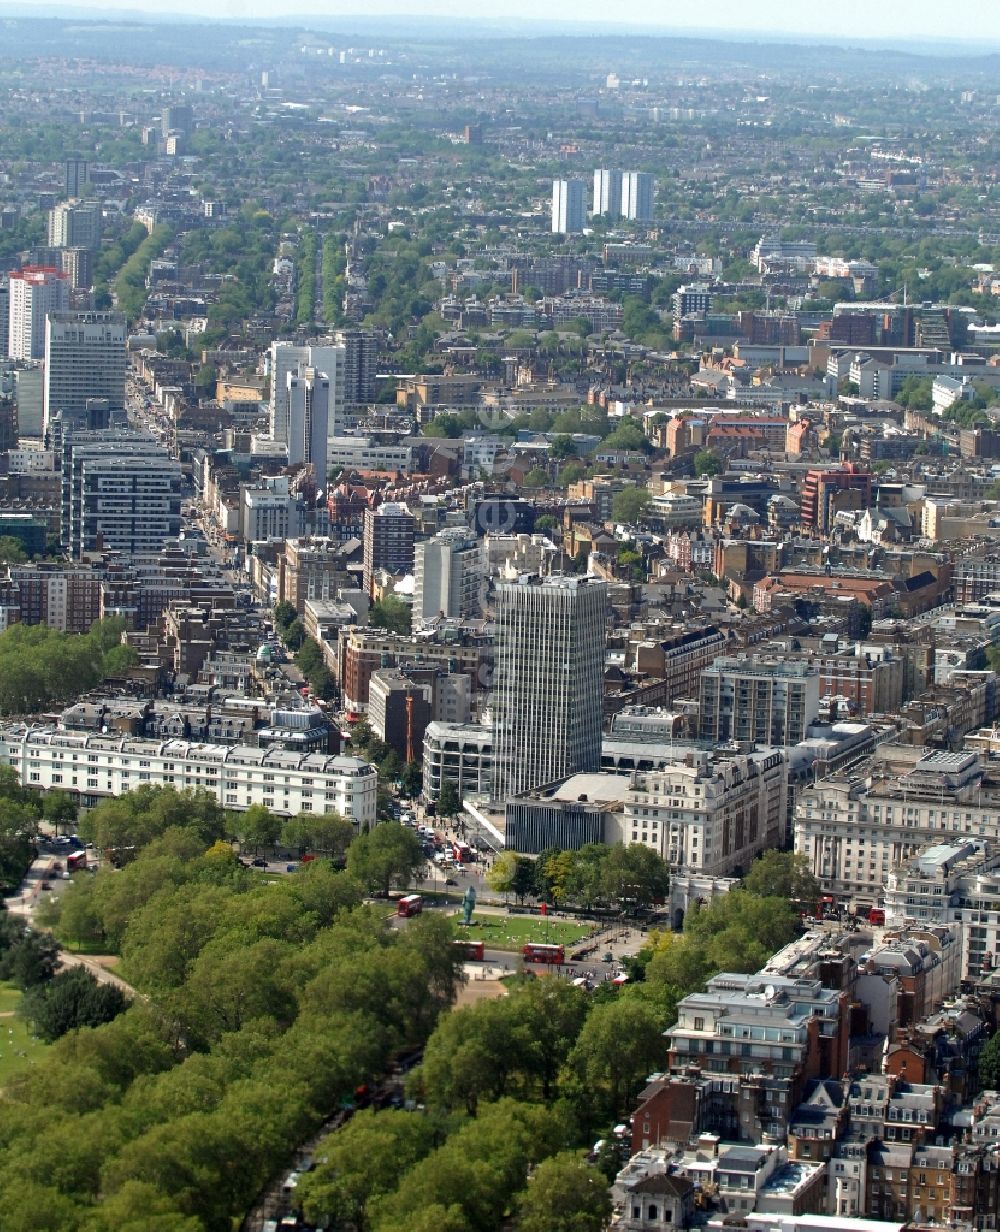 Luftbild West End Ward - Stadtteilansicht auf den Stadtbezirk West End in London